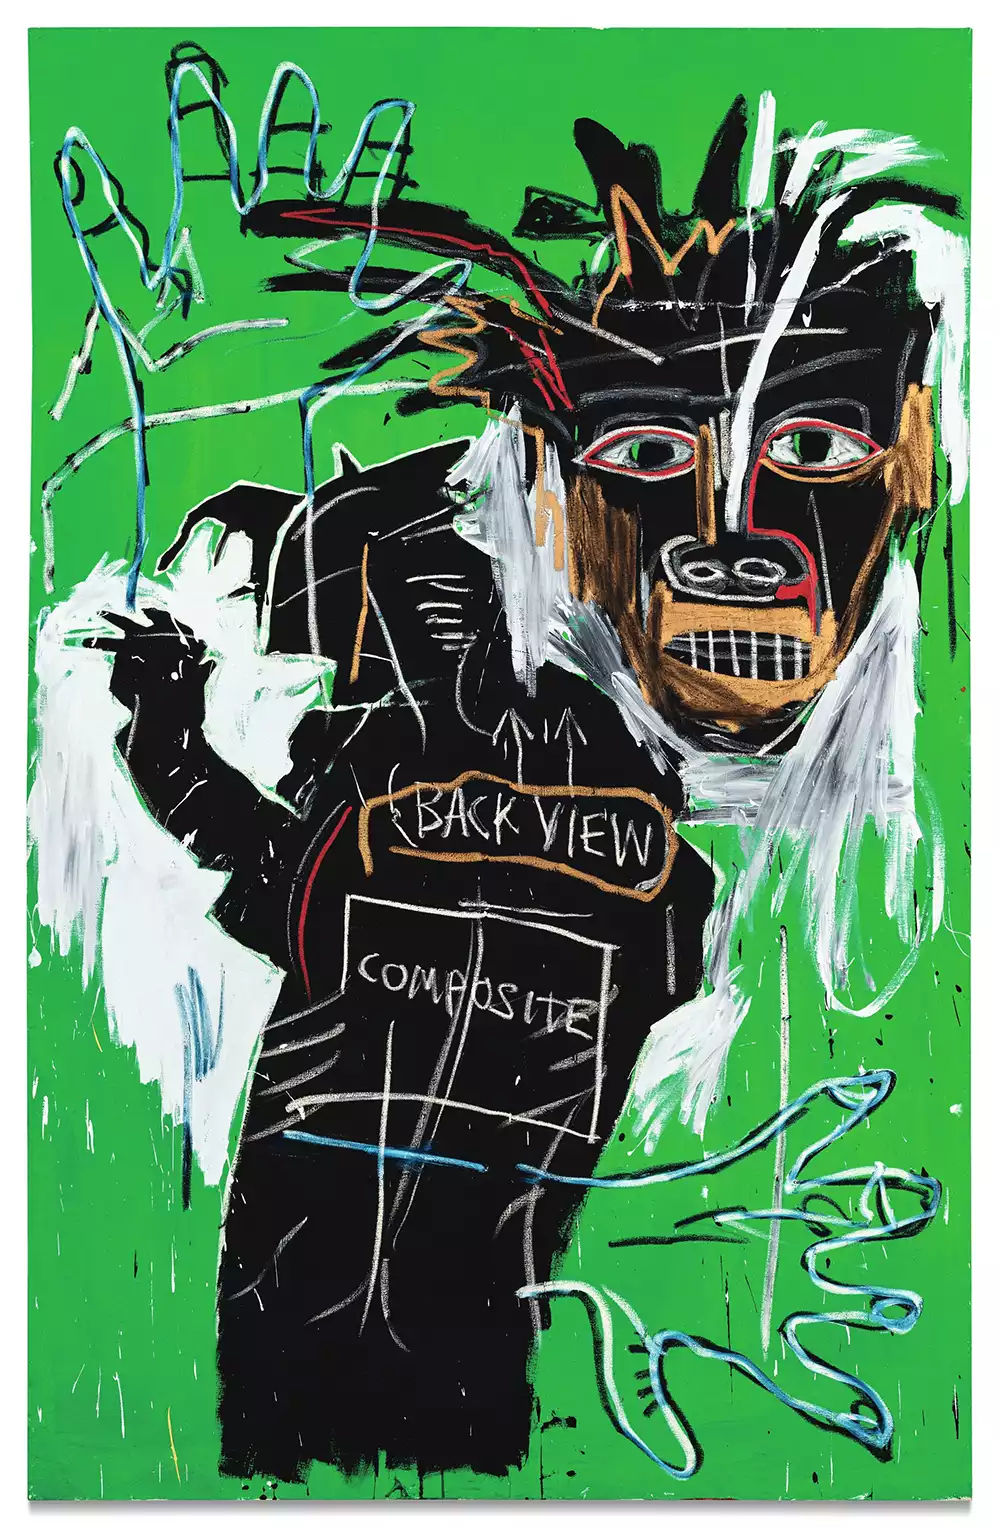 Jean-Michel Basquiat, Self-Portrait as a Heel 1982